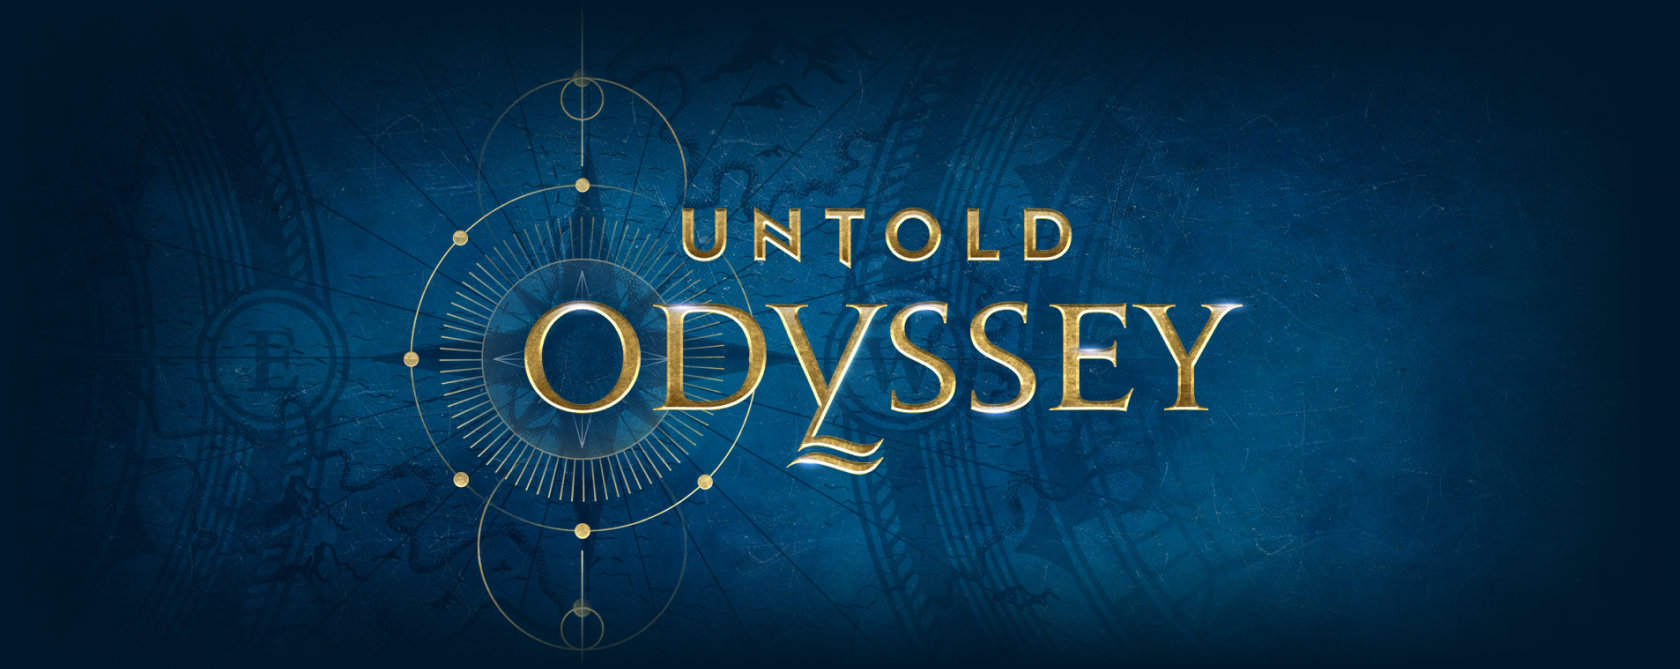 Untold Odyssey, croaziere.co